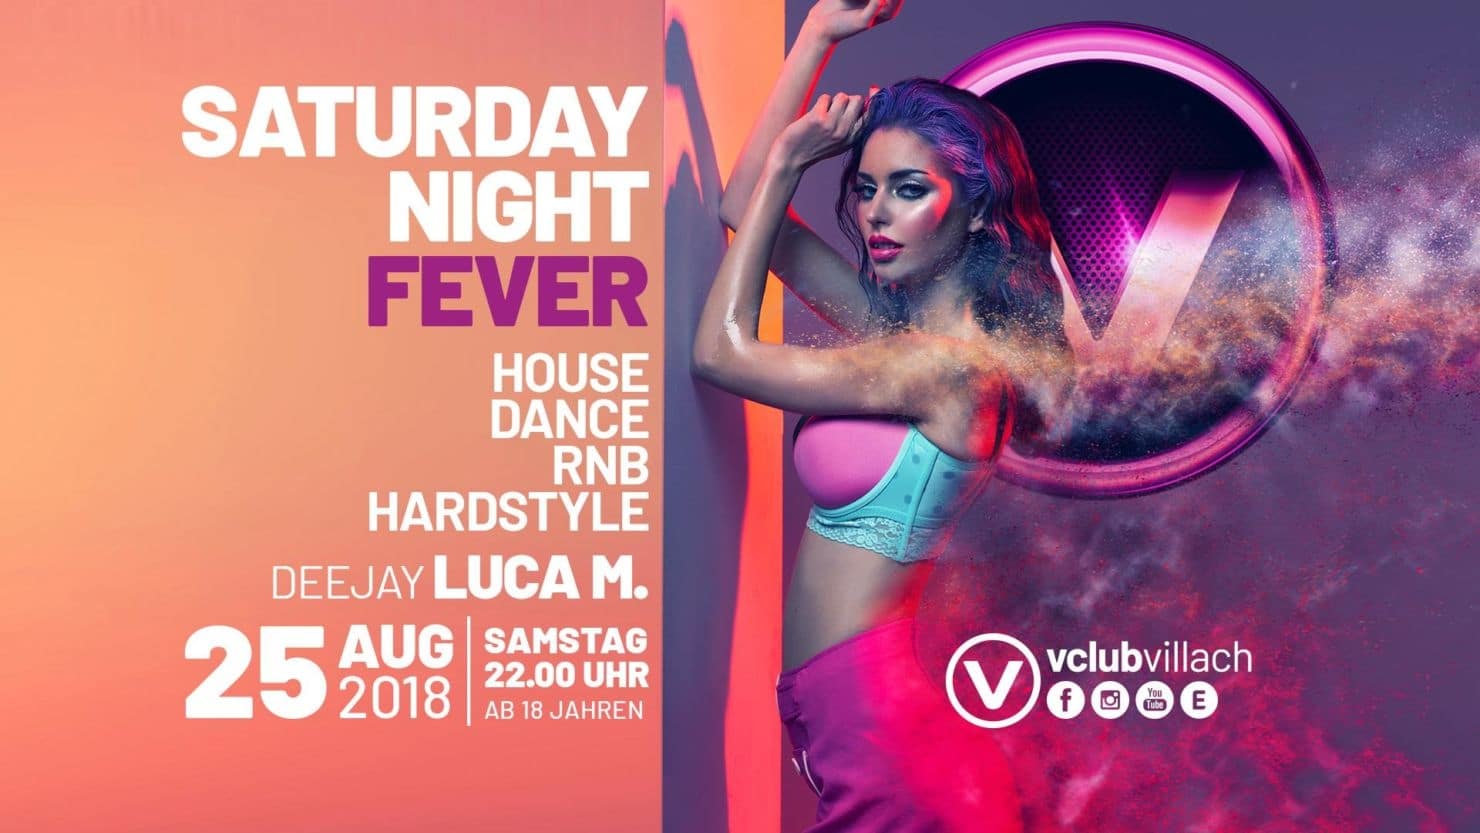 Nicht zu vergessen: Saturday Night Fever – der Samstag mit den besten Hits von House, Dance, RnB und Hardstyle.